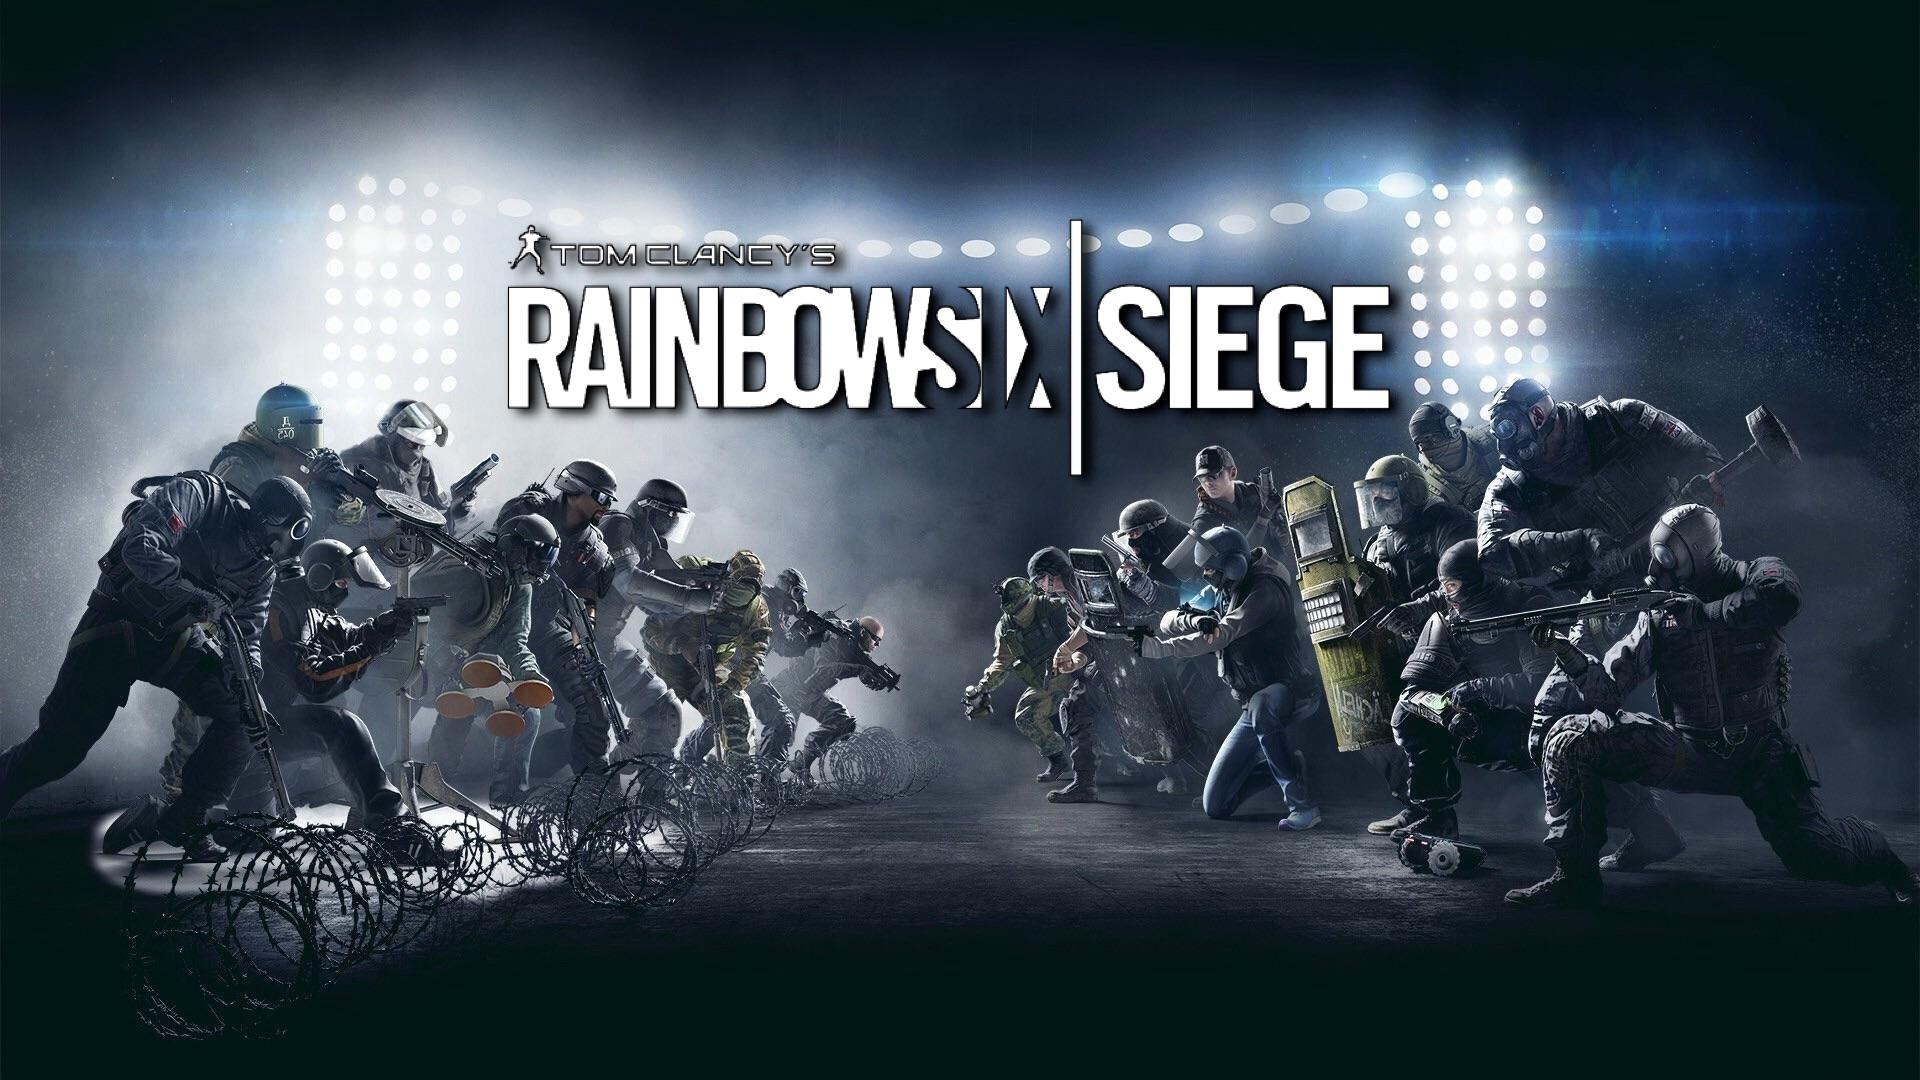 سازندگان بازی Rainbow Six Siege قصد ساخت دنباله این عنوان را ندارند